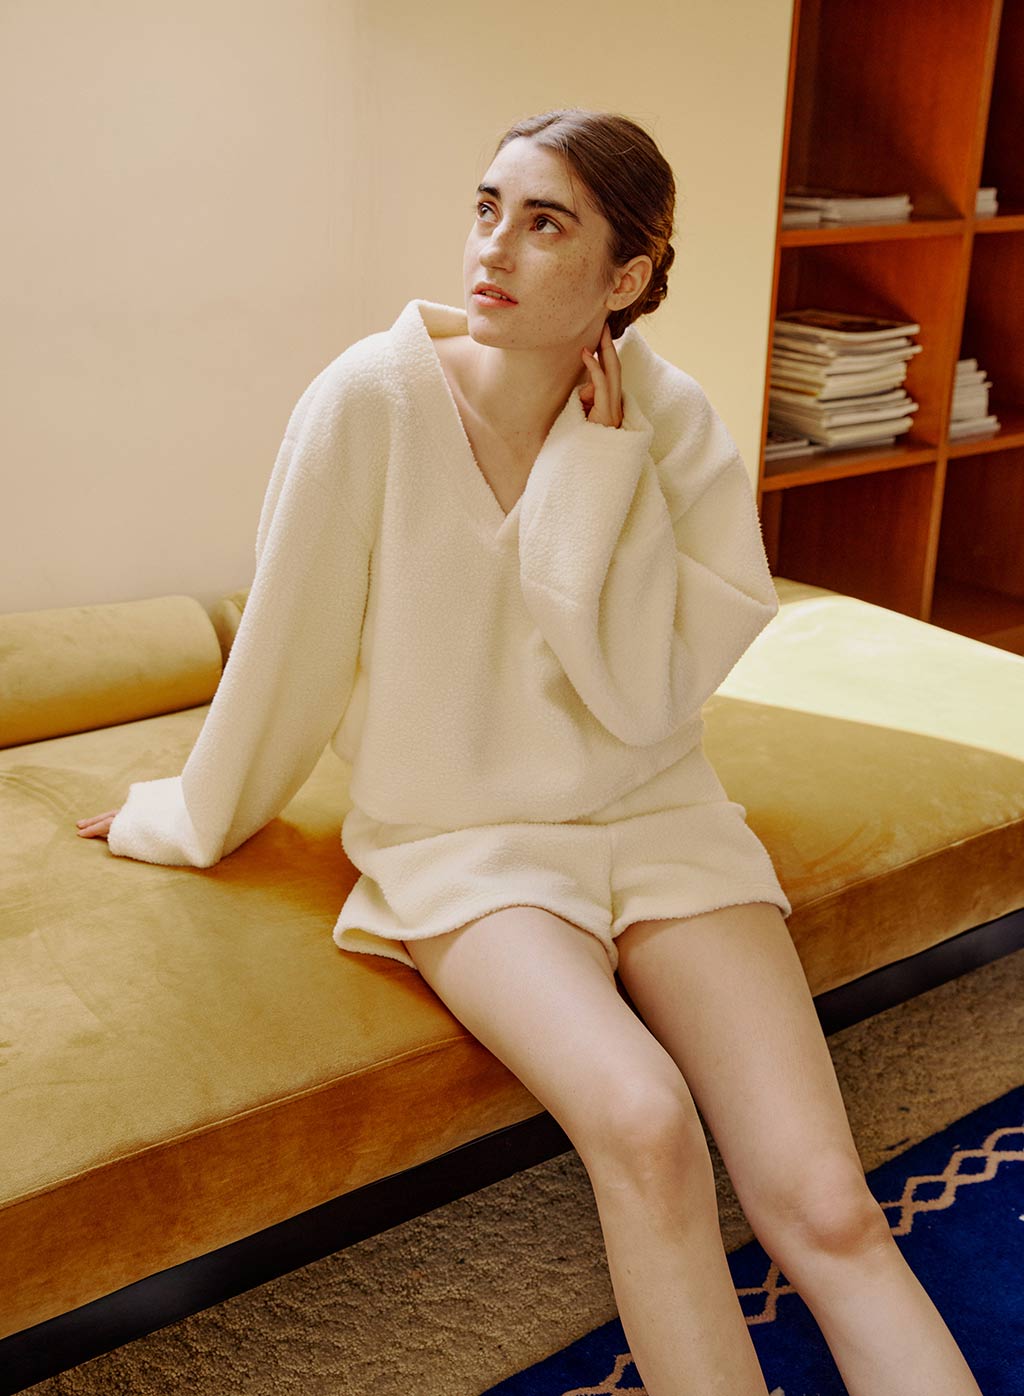 Winkinlin Womens Fuzzy Pajamas Set 2 Piece Lounge Sets Long Sleeve Hooded Tops Short Pants Fleece Sleepwear